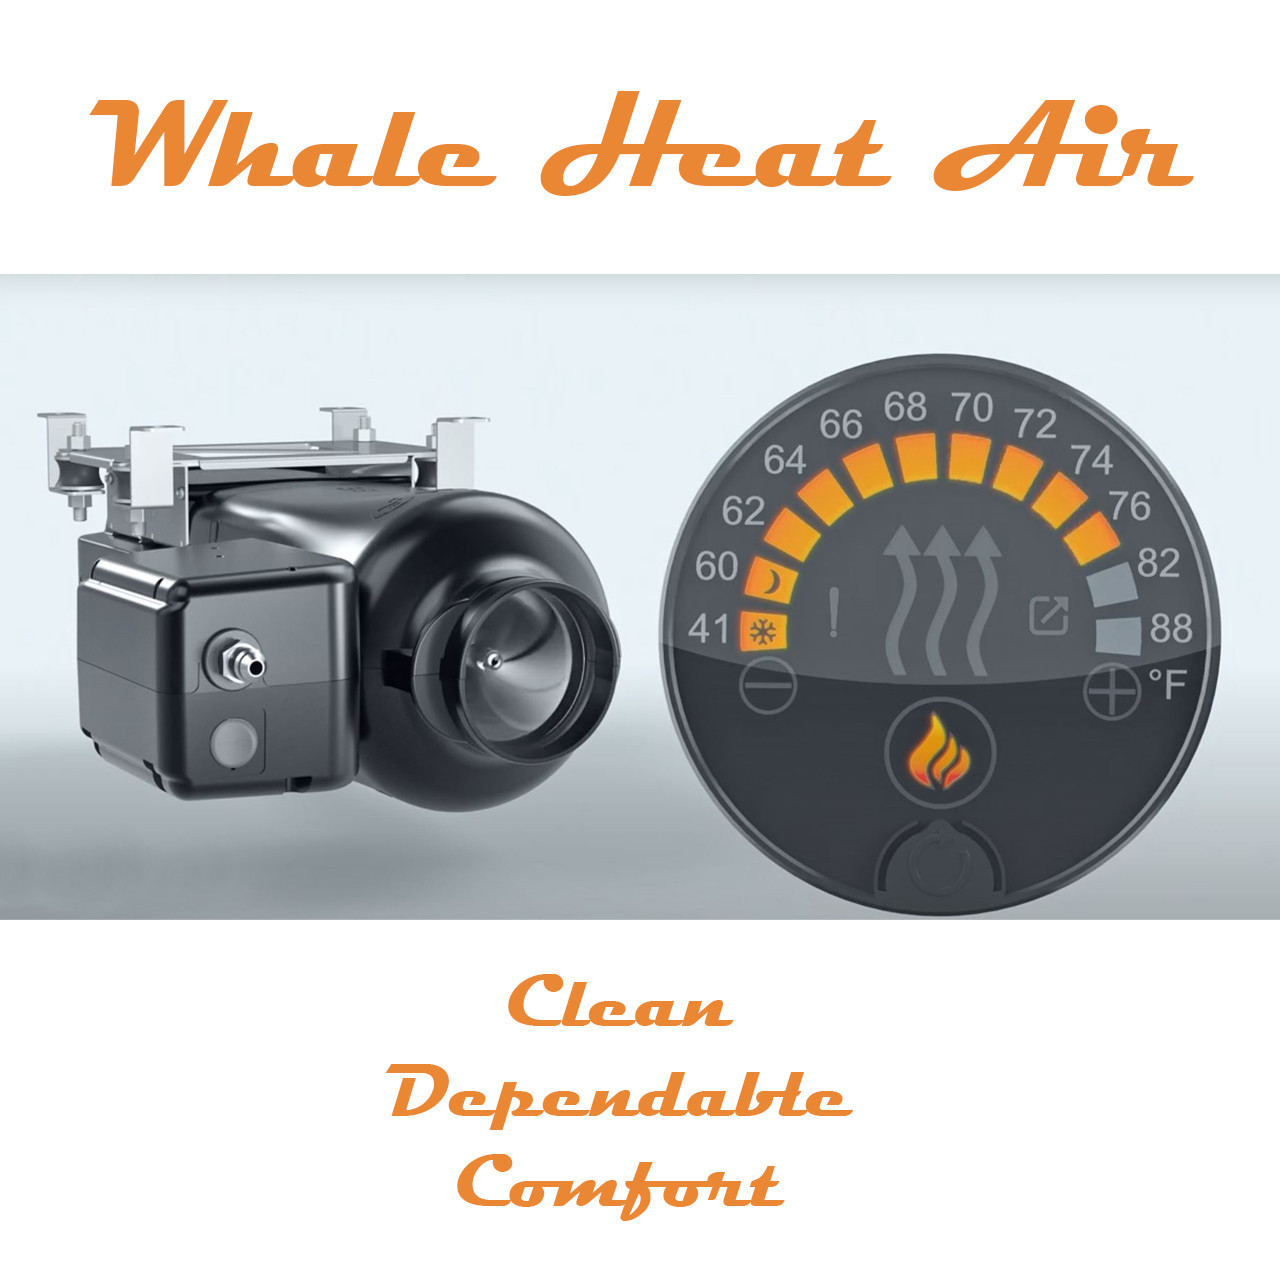 Chauffage au gaz Whale Heat Air 3GT - 3kW